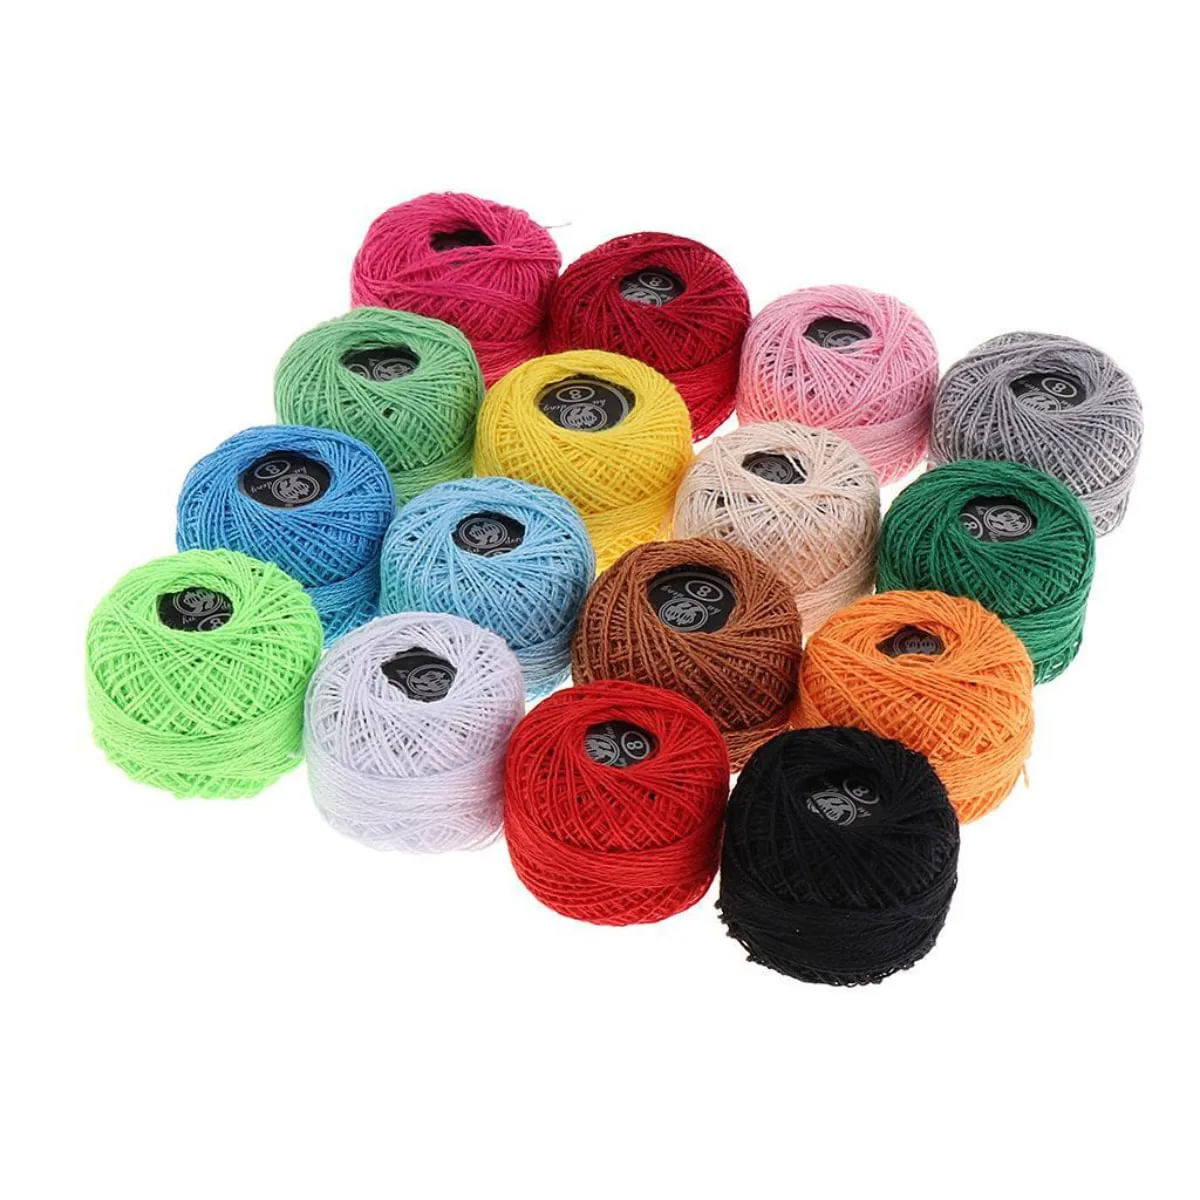 Kit Com 16 Linhas De Algodão Crochê Bordado Coloridas N°08